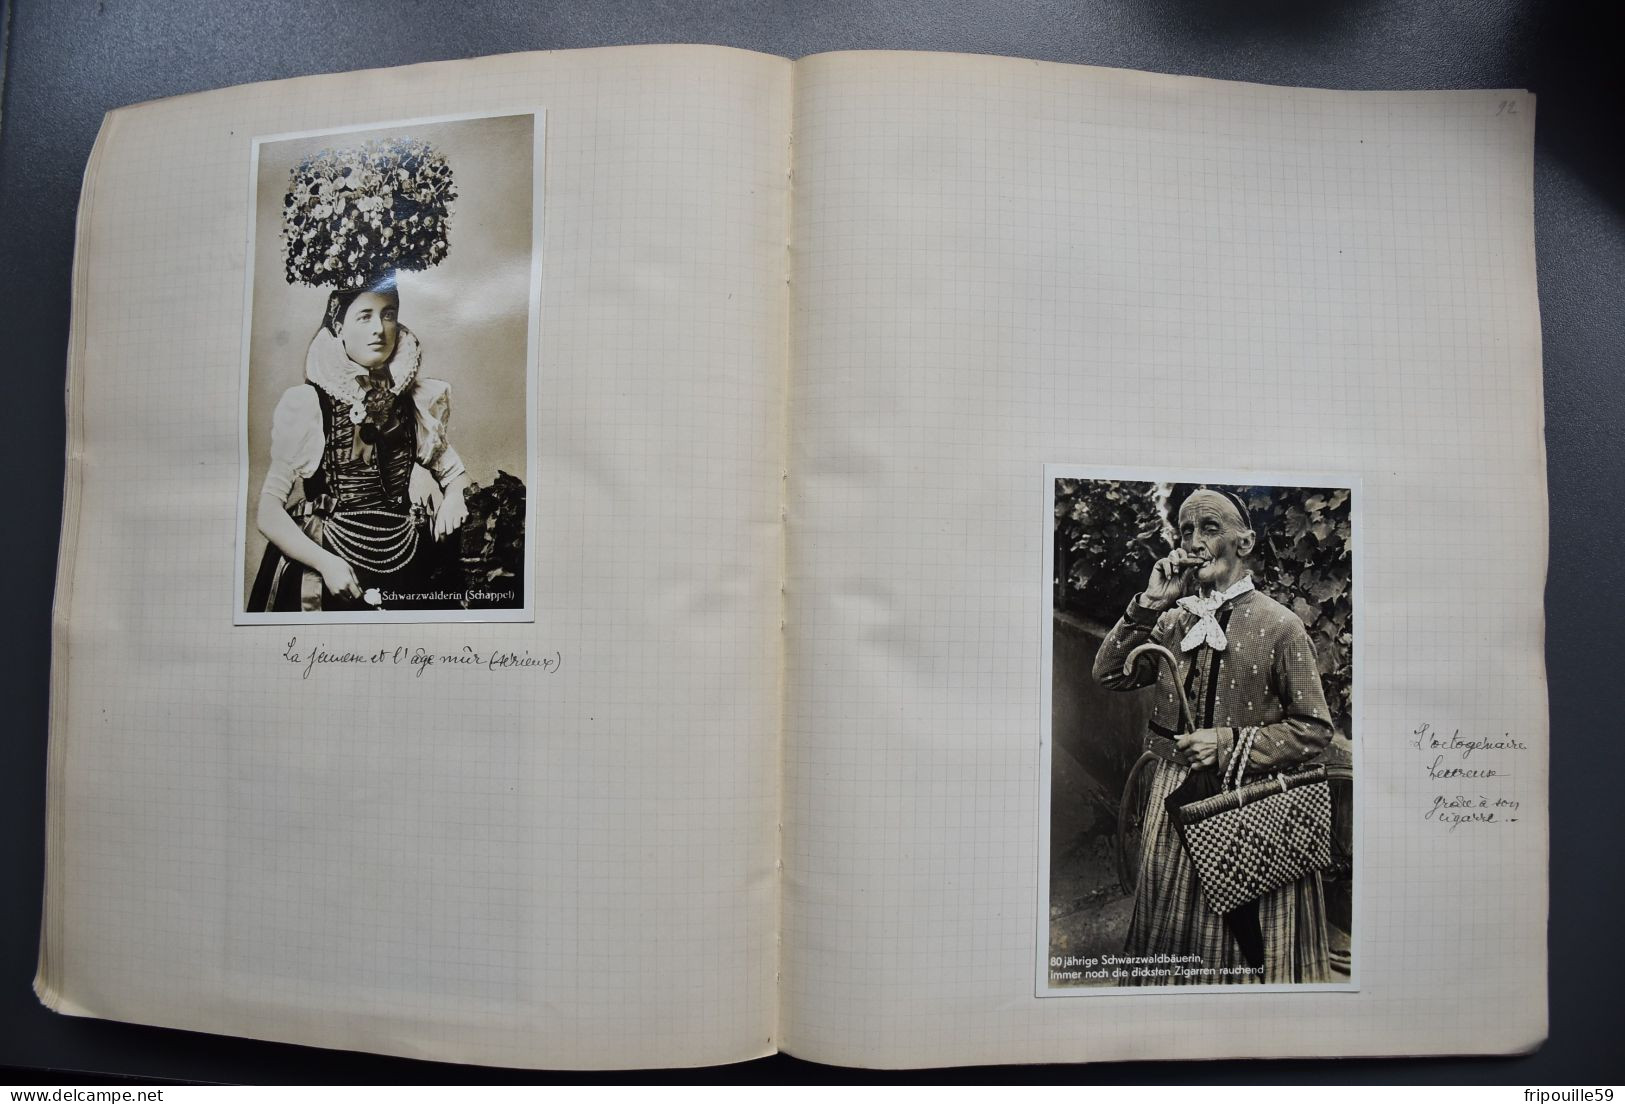 Cahier de voyage - 1931-1938 - 115 cartes et documents divers - Allemagne-Hollande-Luxembourg-Autriche